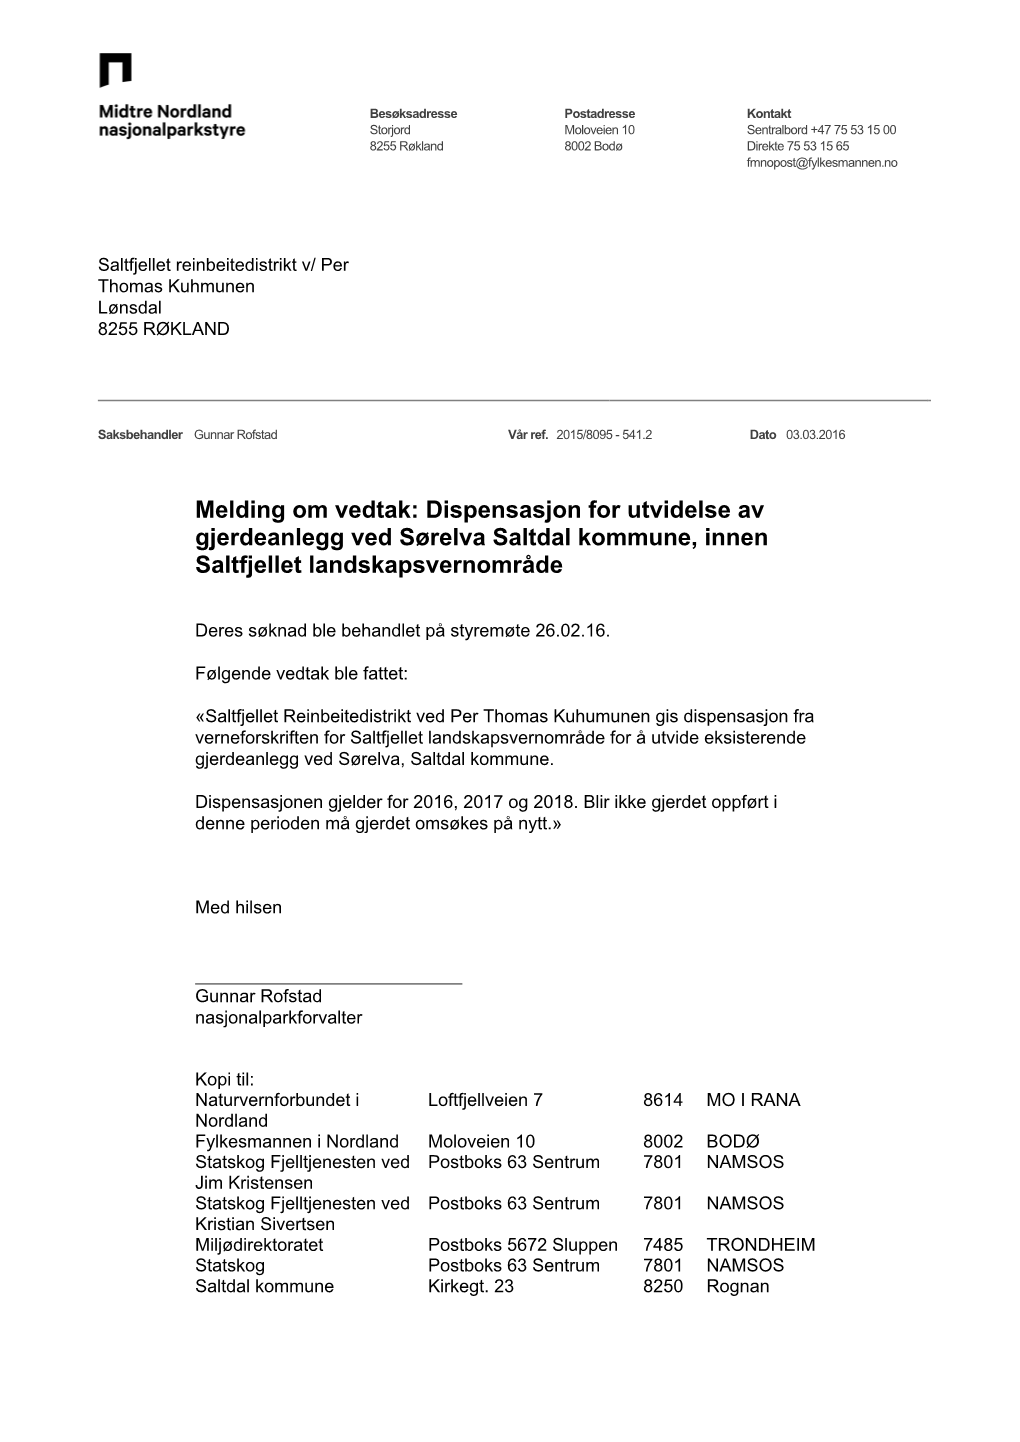 Dispensasjon for Utvidelse Av Gjerdeanlegg Ved Sørelva Saltdal Kommune, Innen Saltfjellet Landskapsvernområde